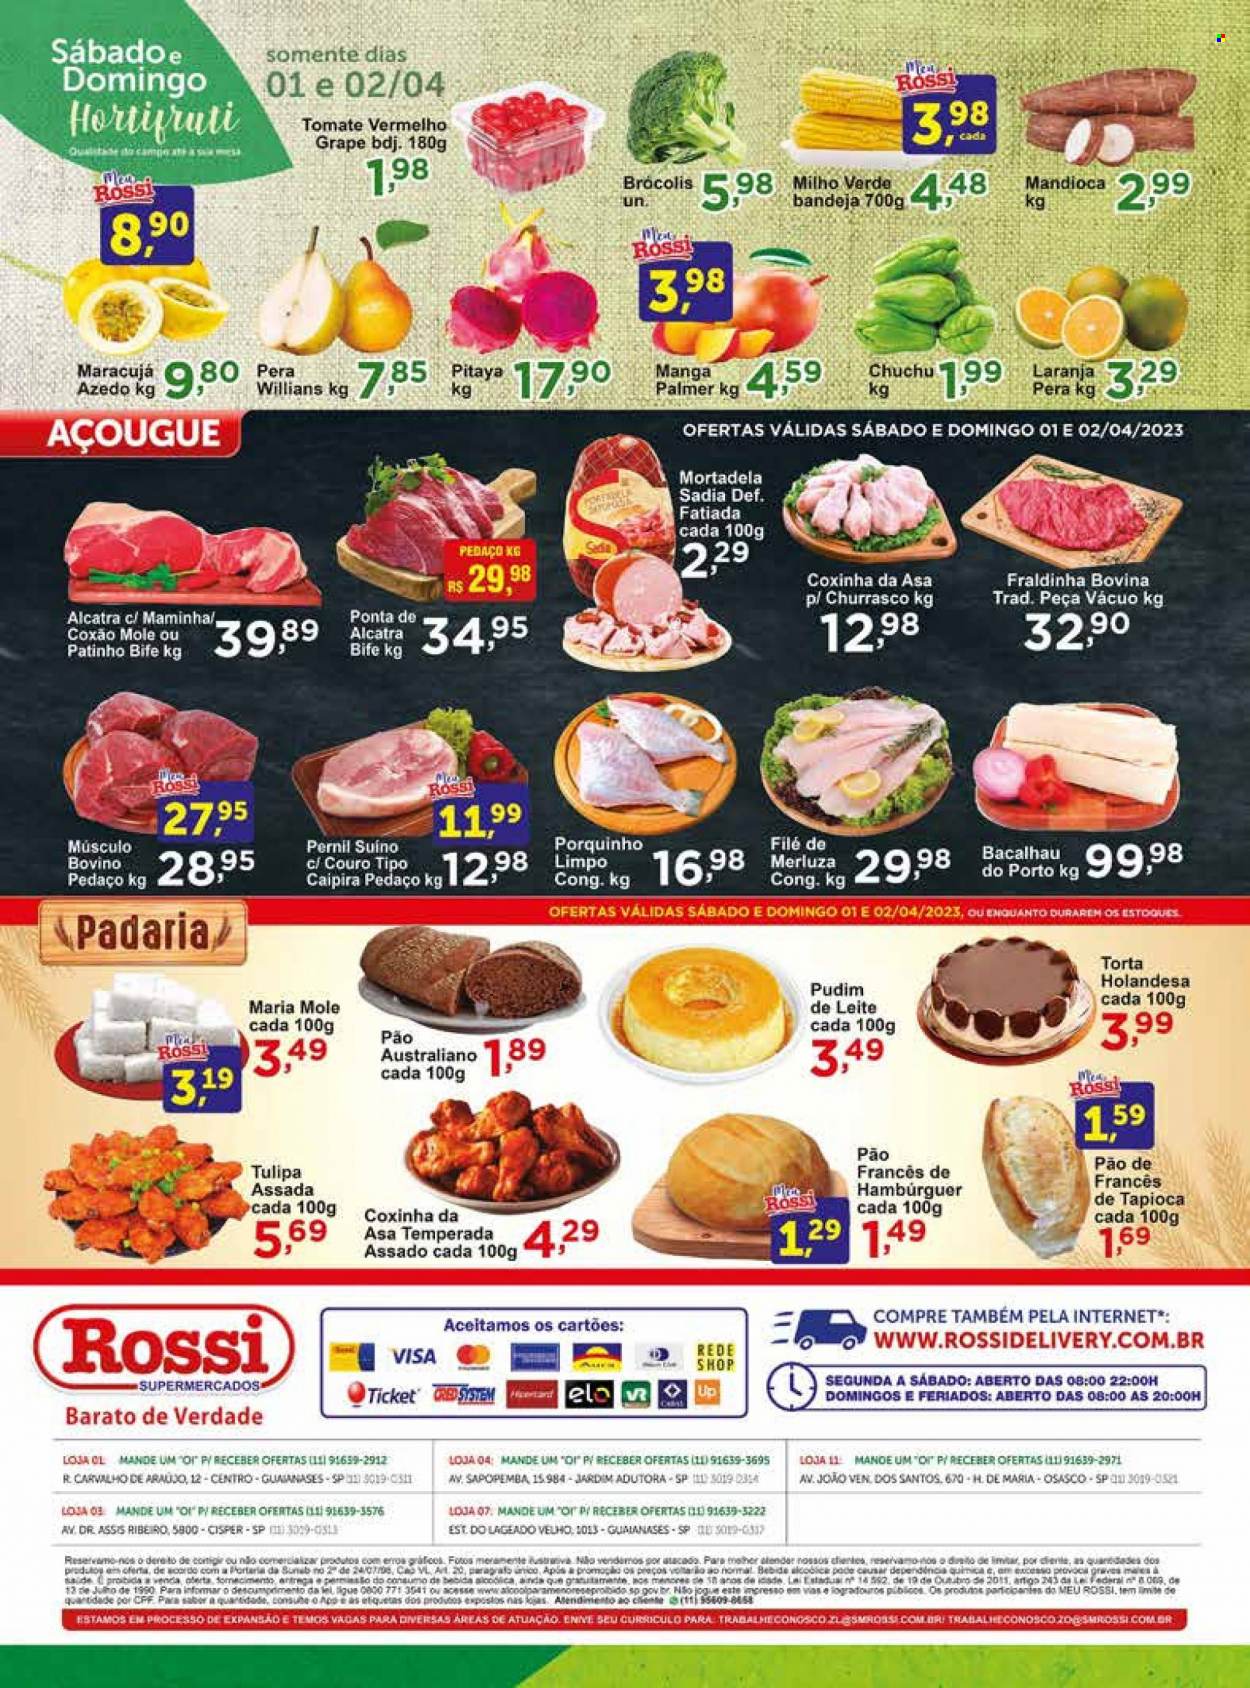 Encarte Rossi Supermercados  - 01.04.2023 - 02.04.2023.